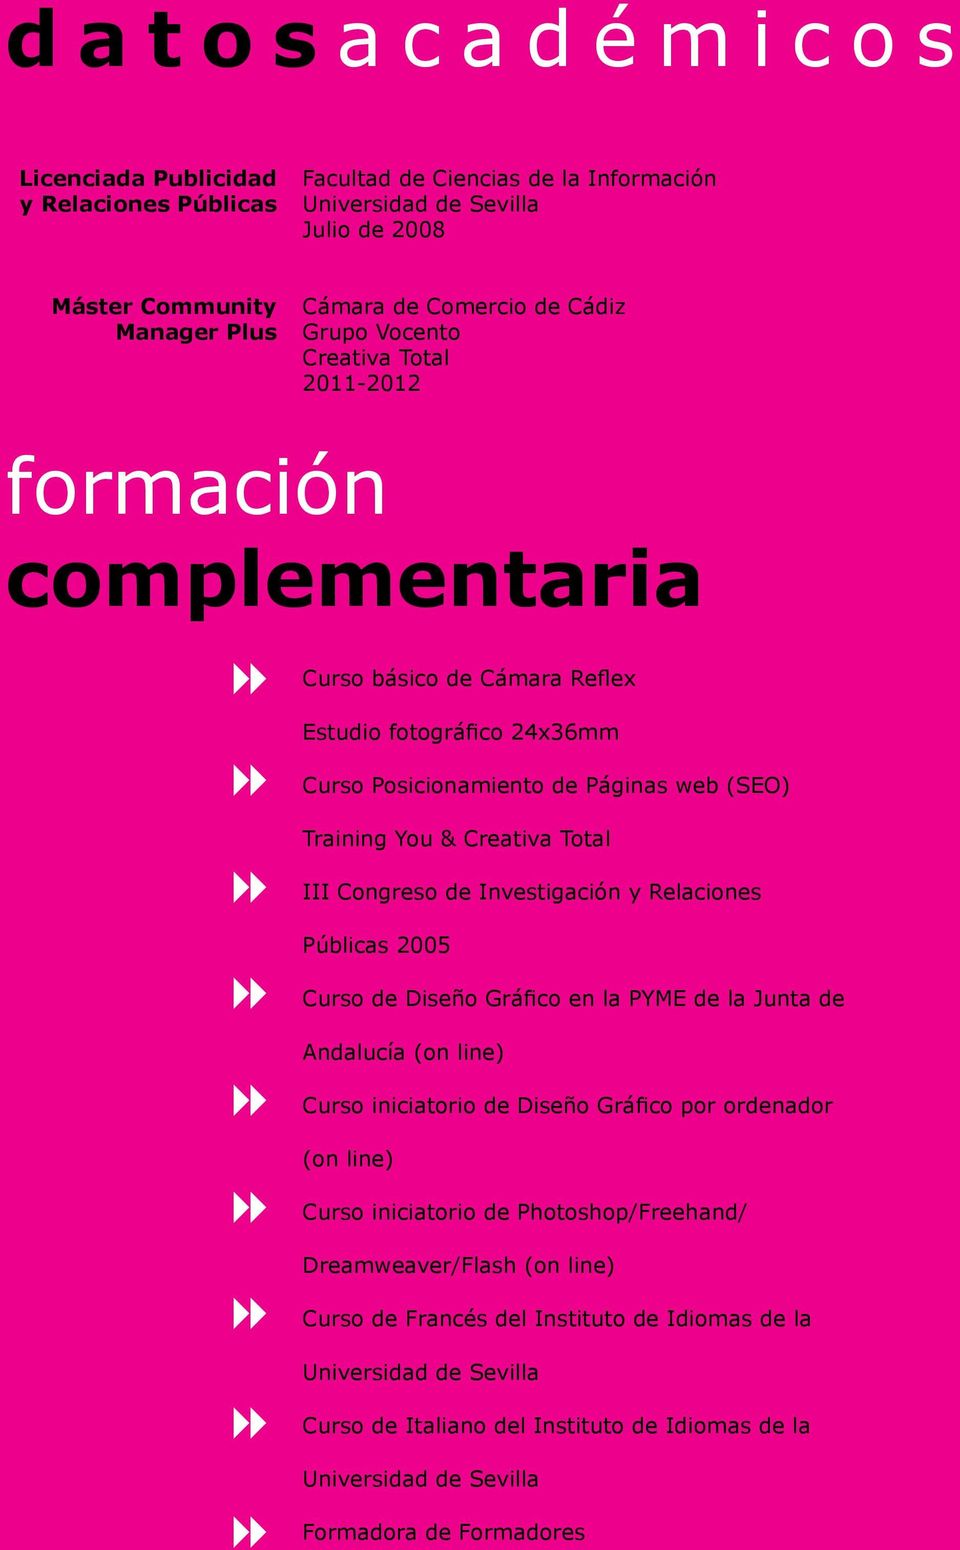 Congreso de Investigación y Relaciones Públicas 2005 Curso de Diseño Gráfico en la PYME de la Junta de Andalucía (on line) Curso iniciatorio de Diseño Gráfico por ordenador (on line) Curso